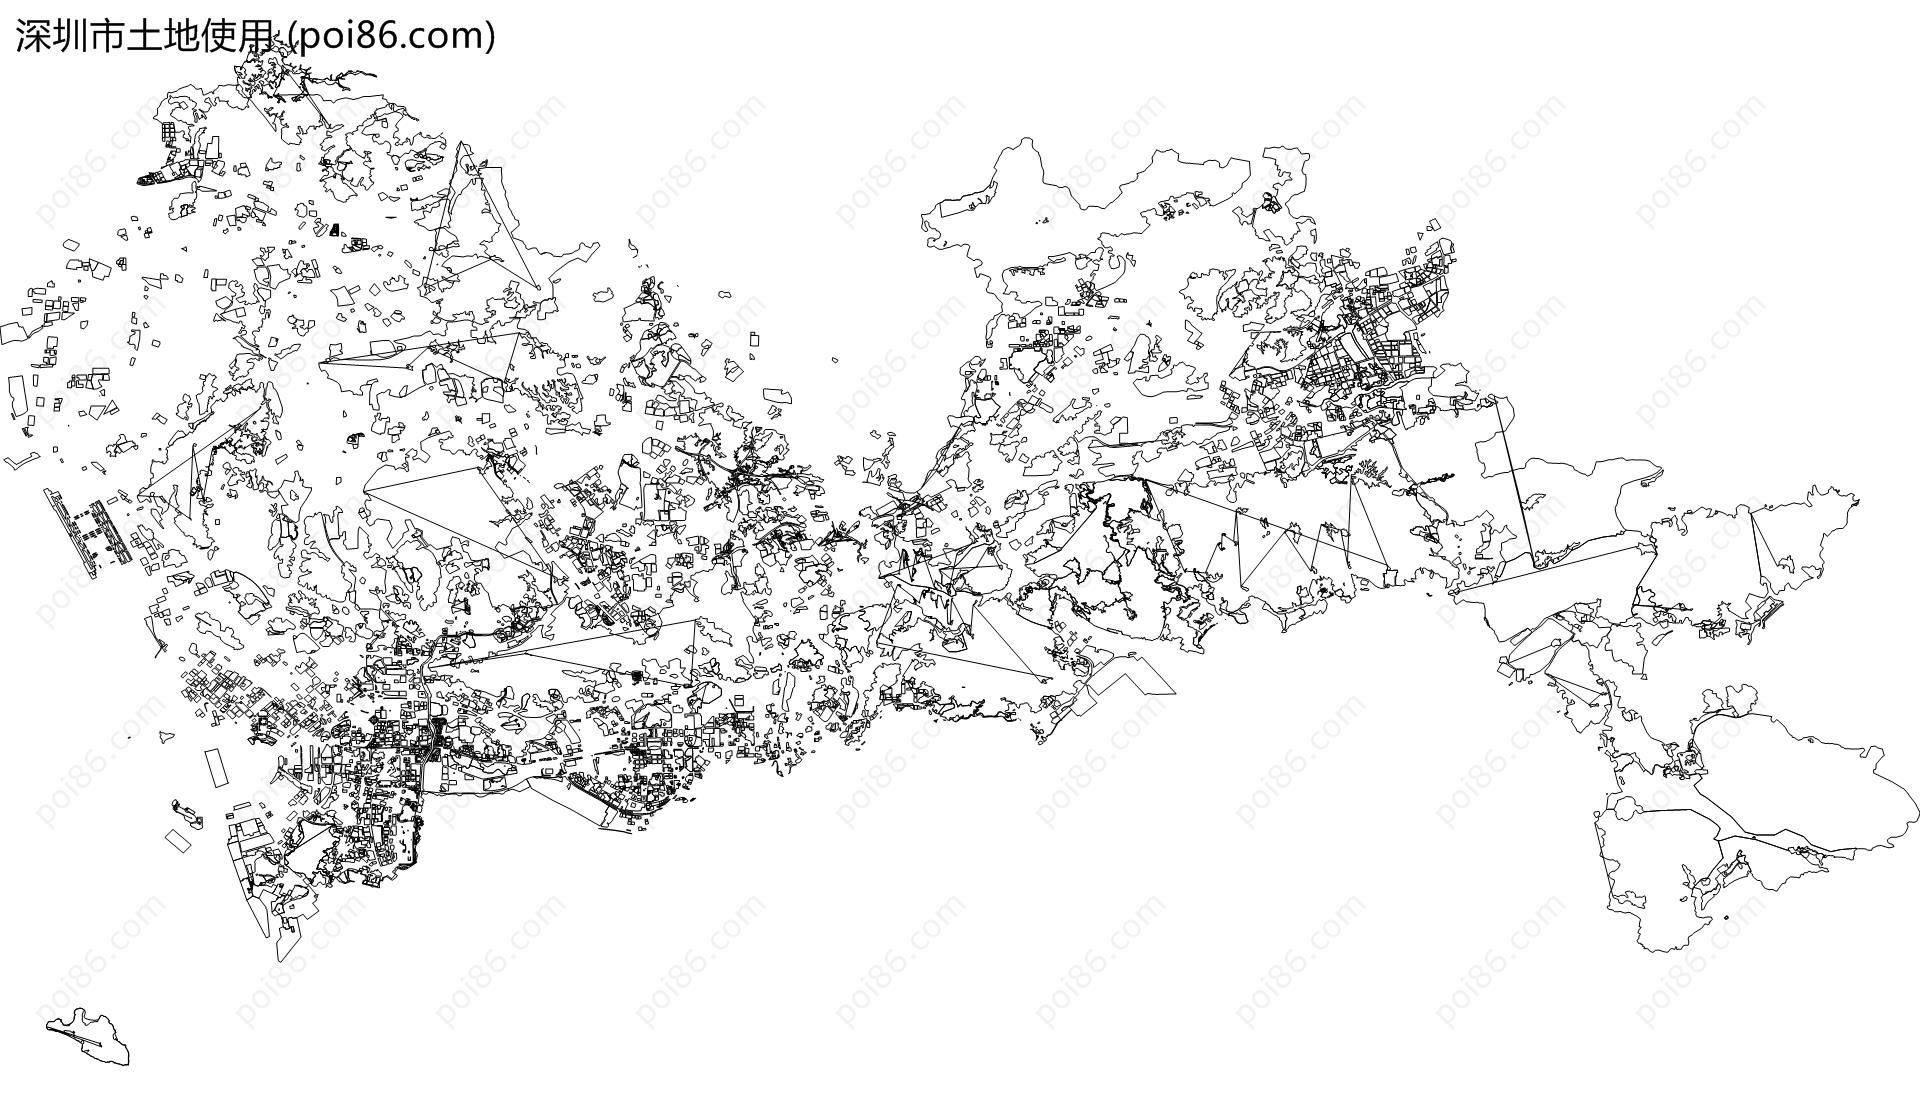 深圳市土地使用地图